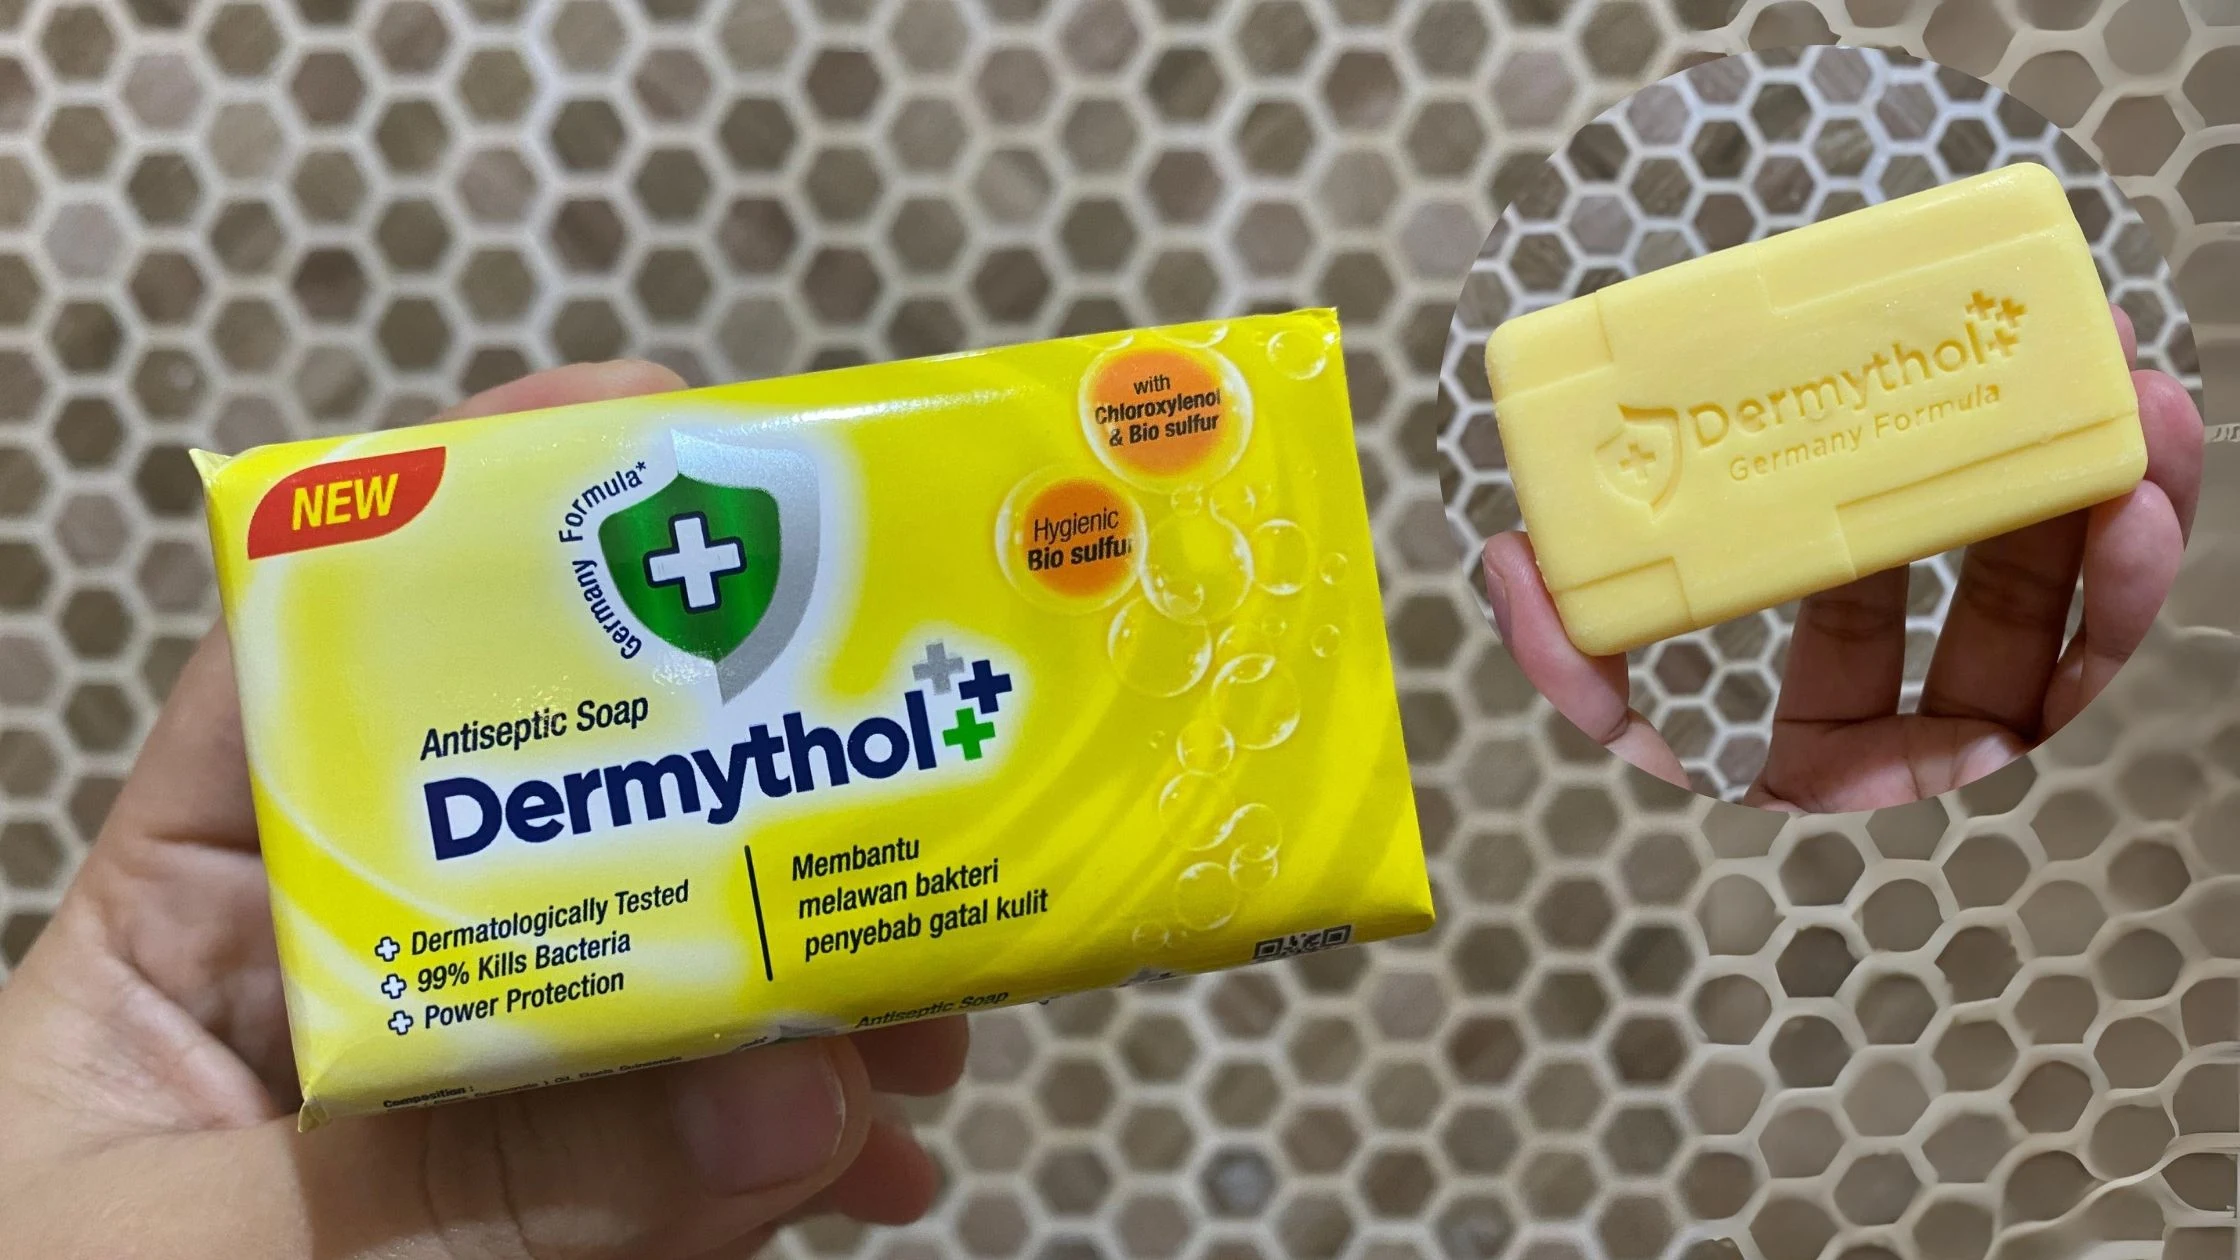 Dermythol Antiseptic Biosulfur soal